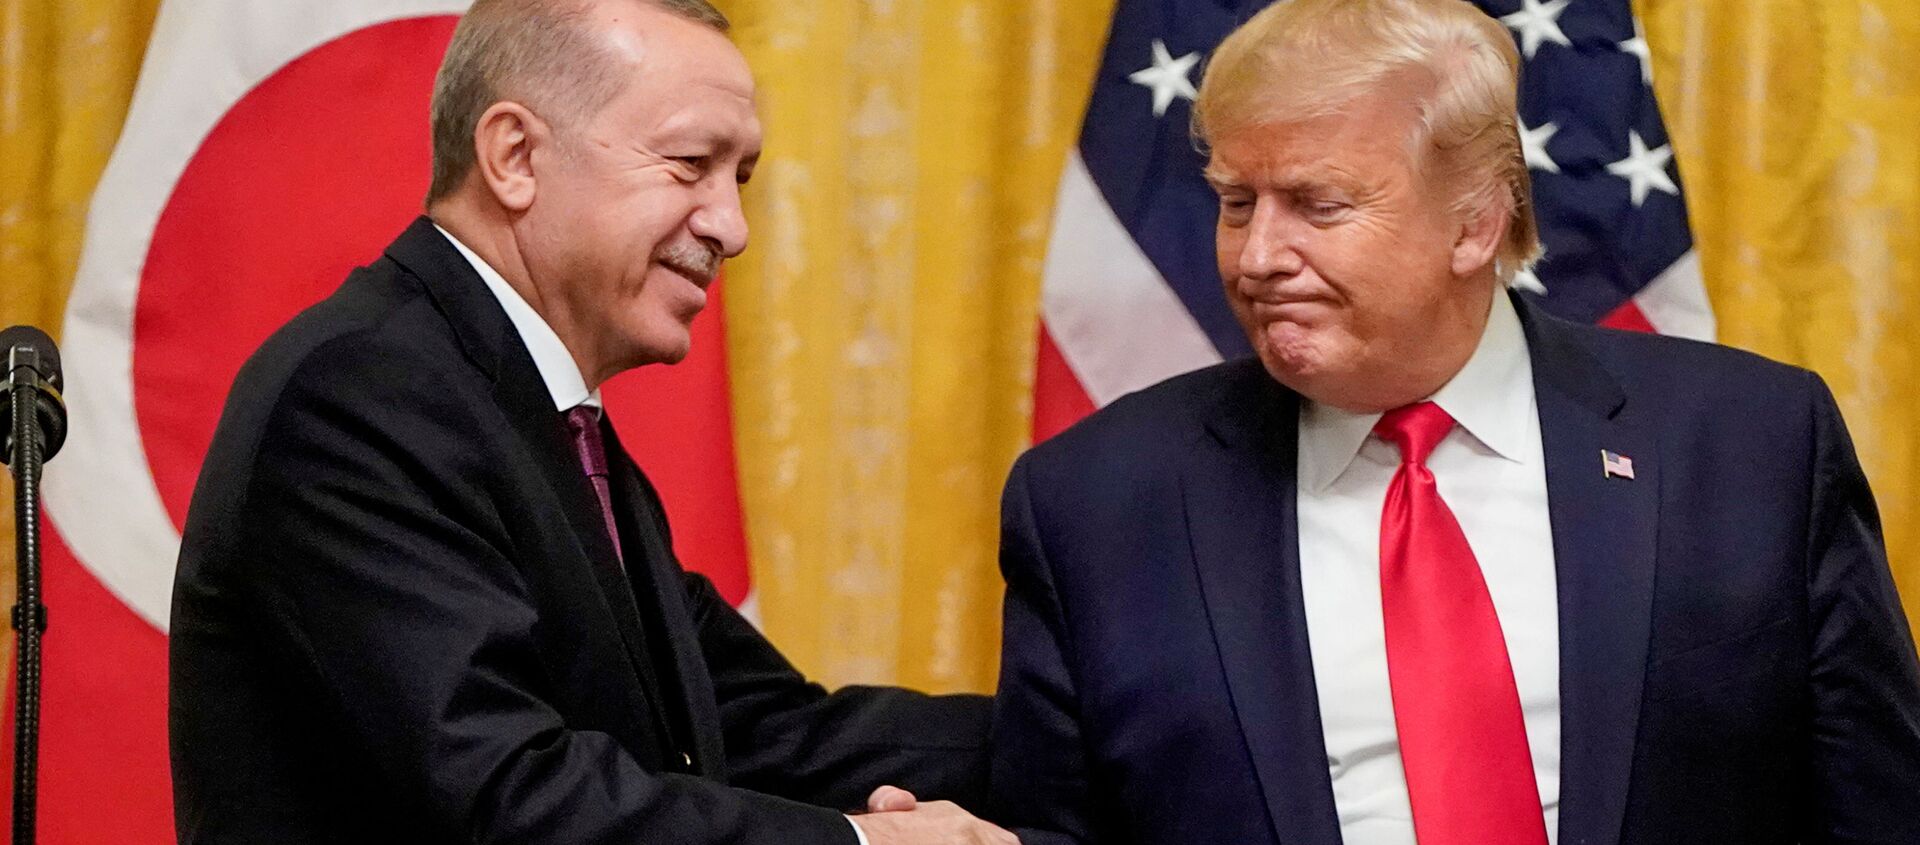 El presidente de Turquía, Recep Tayyip Erdogan, y el presidente estadounidense, Donald Ttrump - Sputnik Mundo, 1920, 25.11.2020